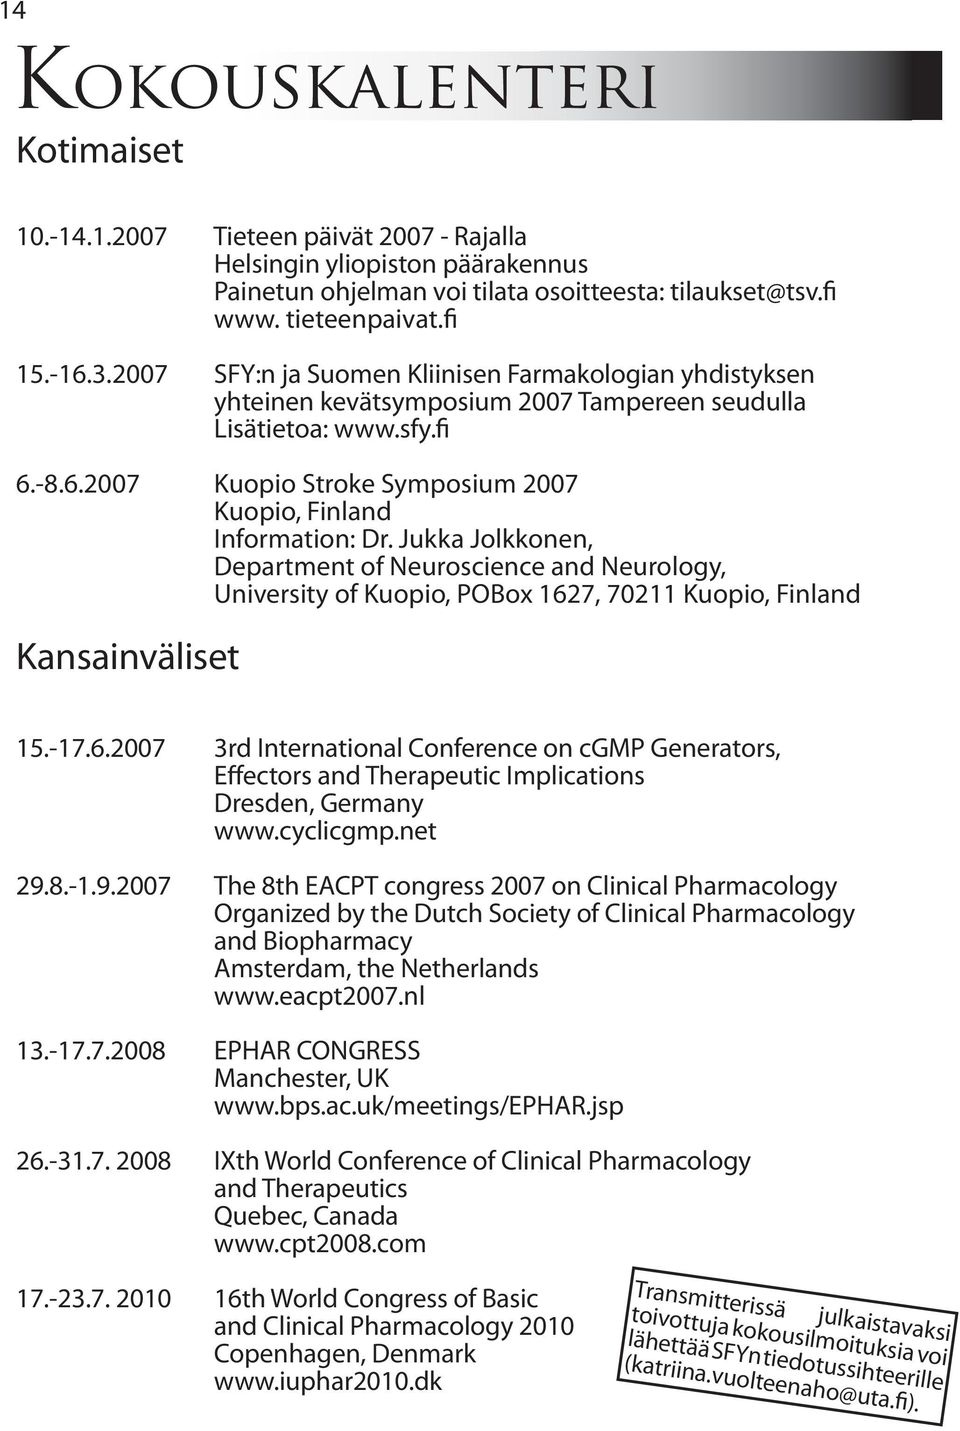 Jukka Jolkkonen, Department of Neuroscience and Neurology, University of Kuopio, POBox 162